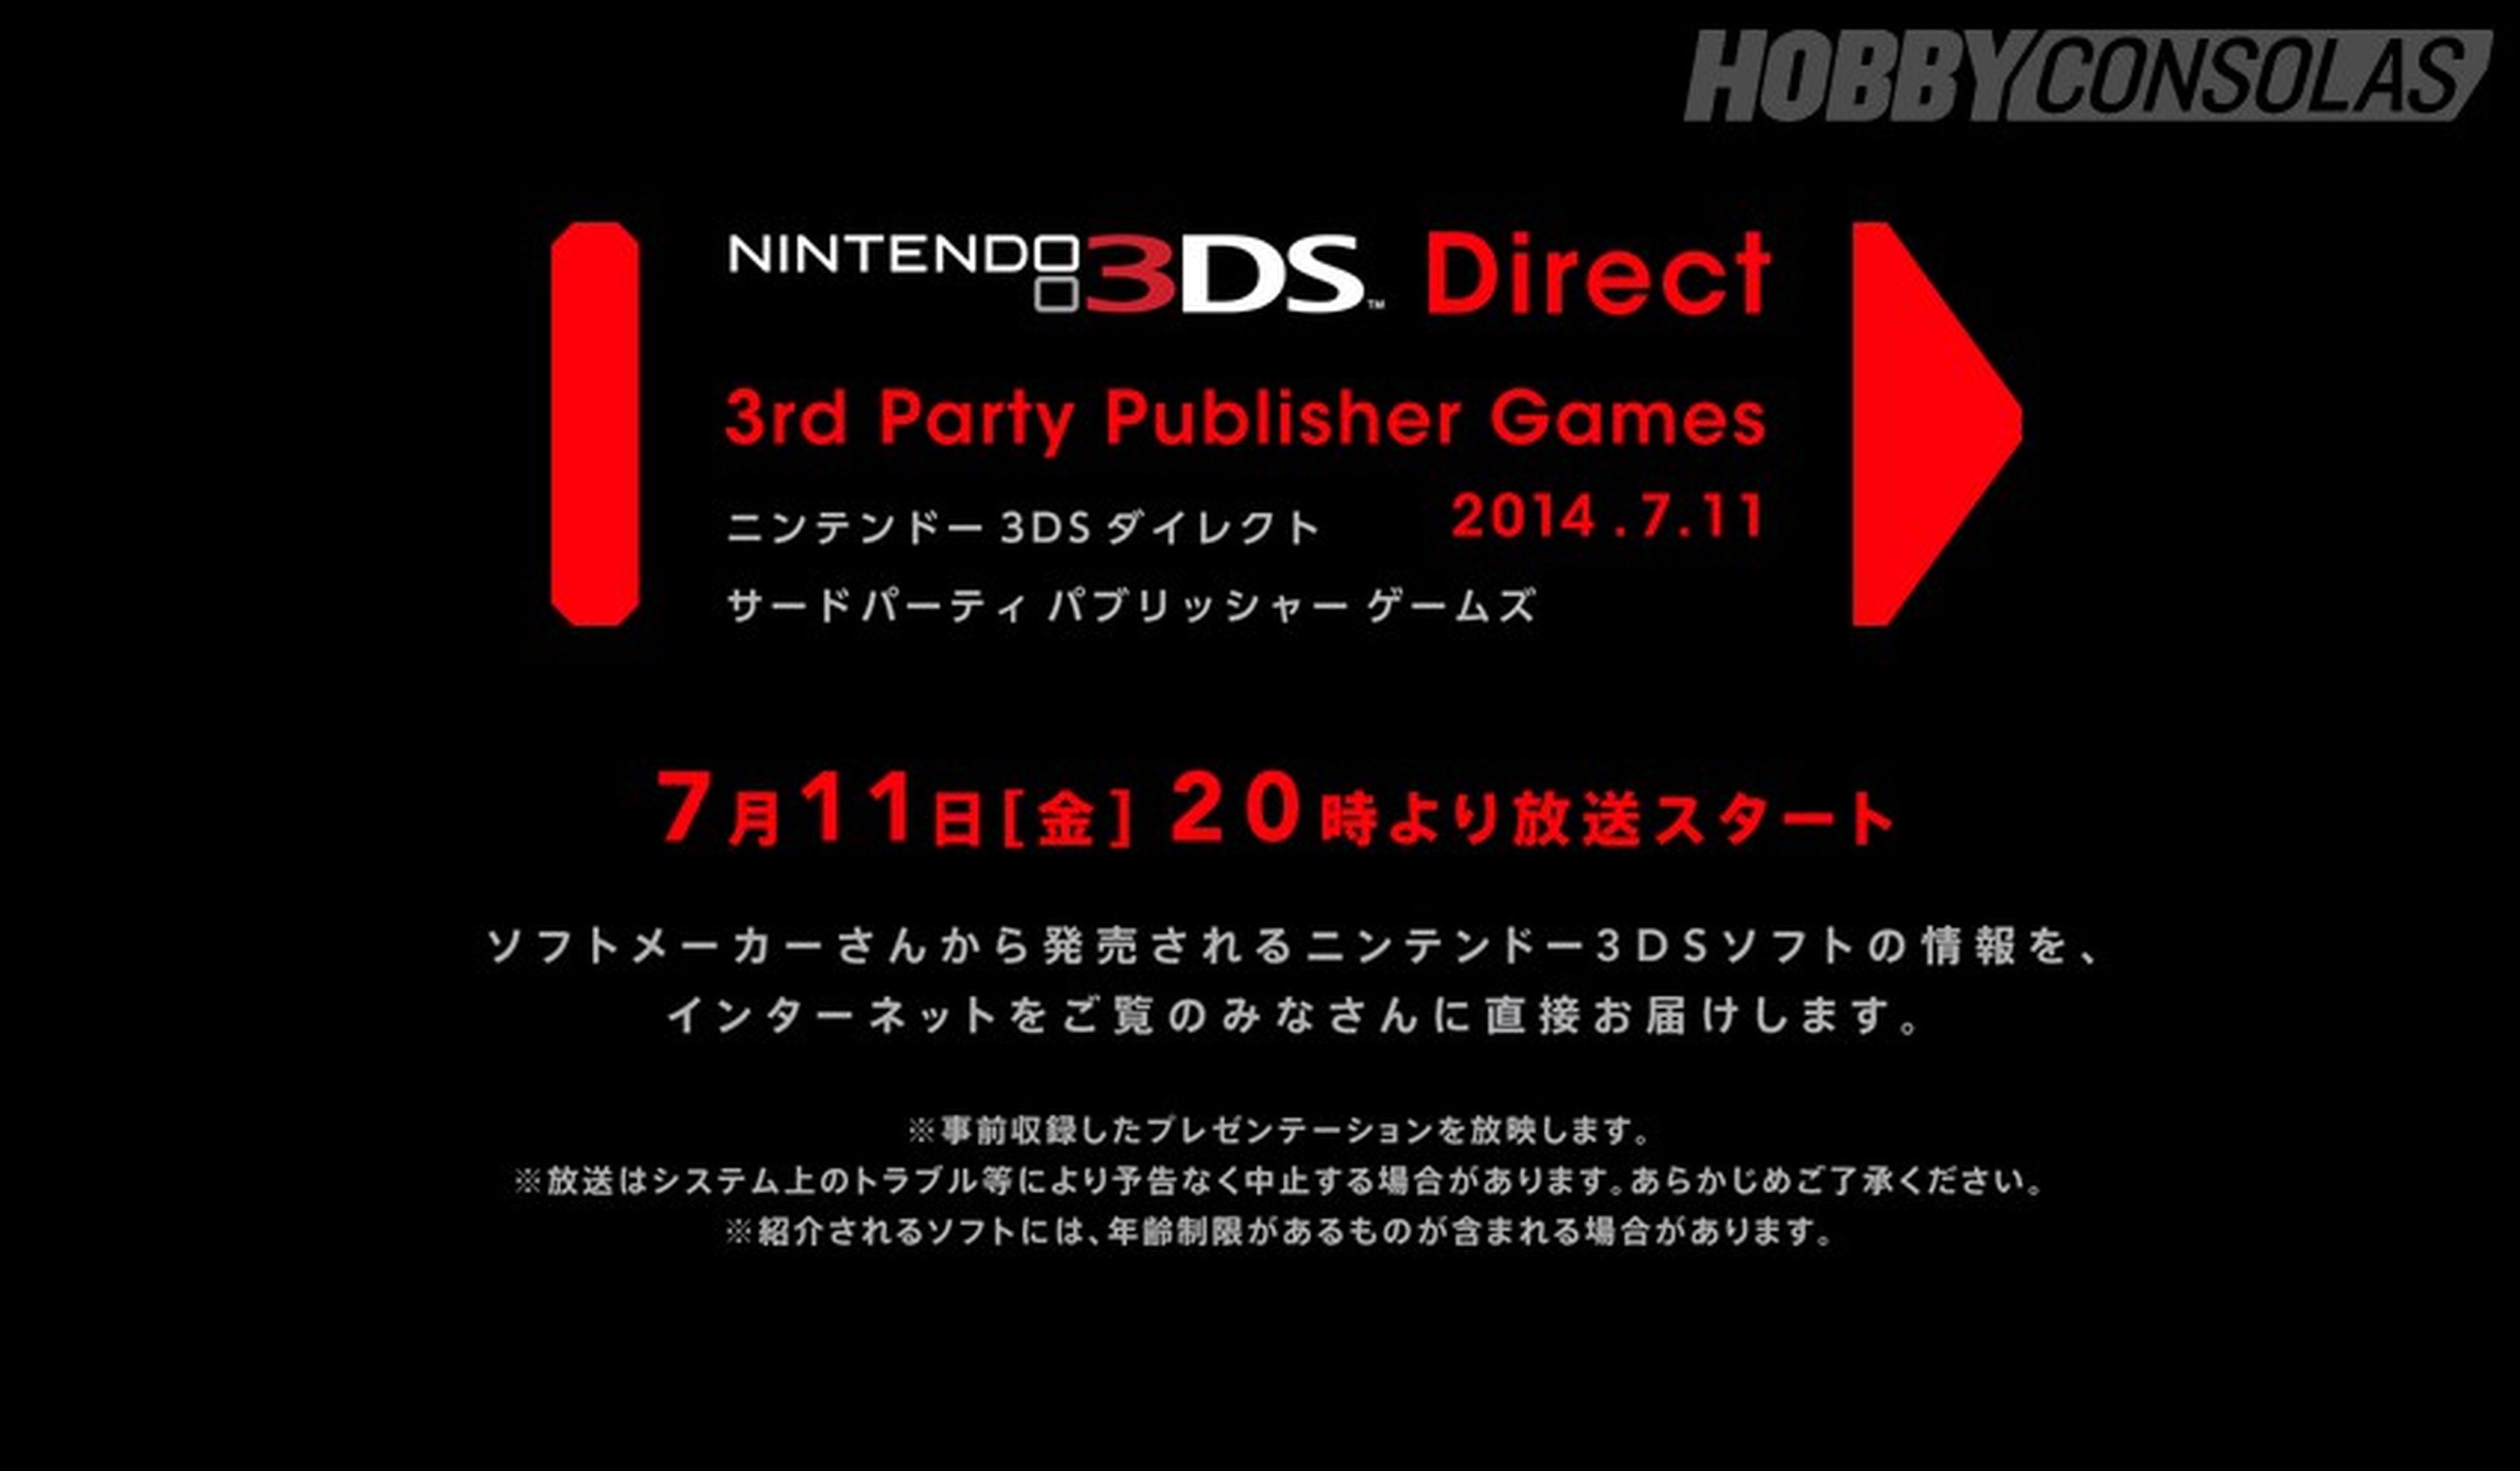 Nintendo Direct especial third party en 3DS: Síguelo aquí desde las 13:00h